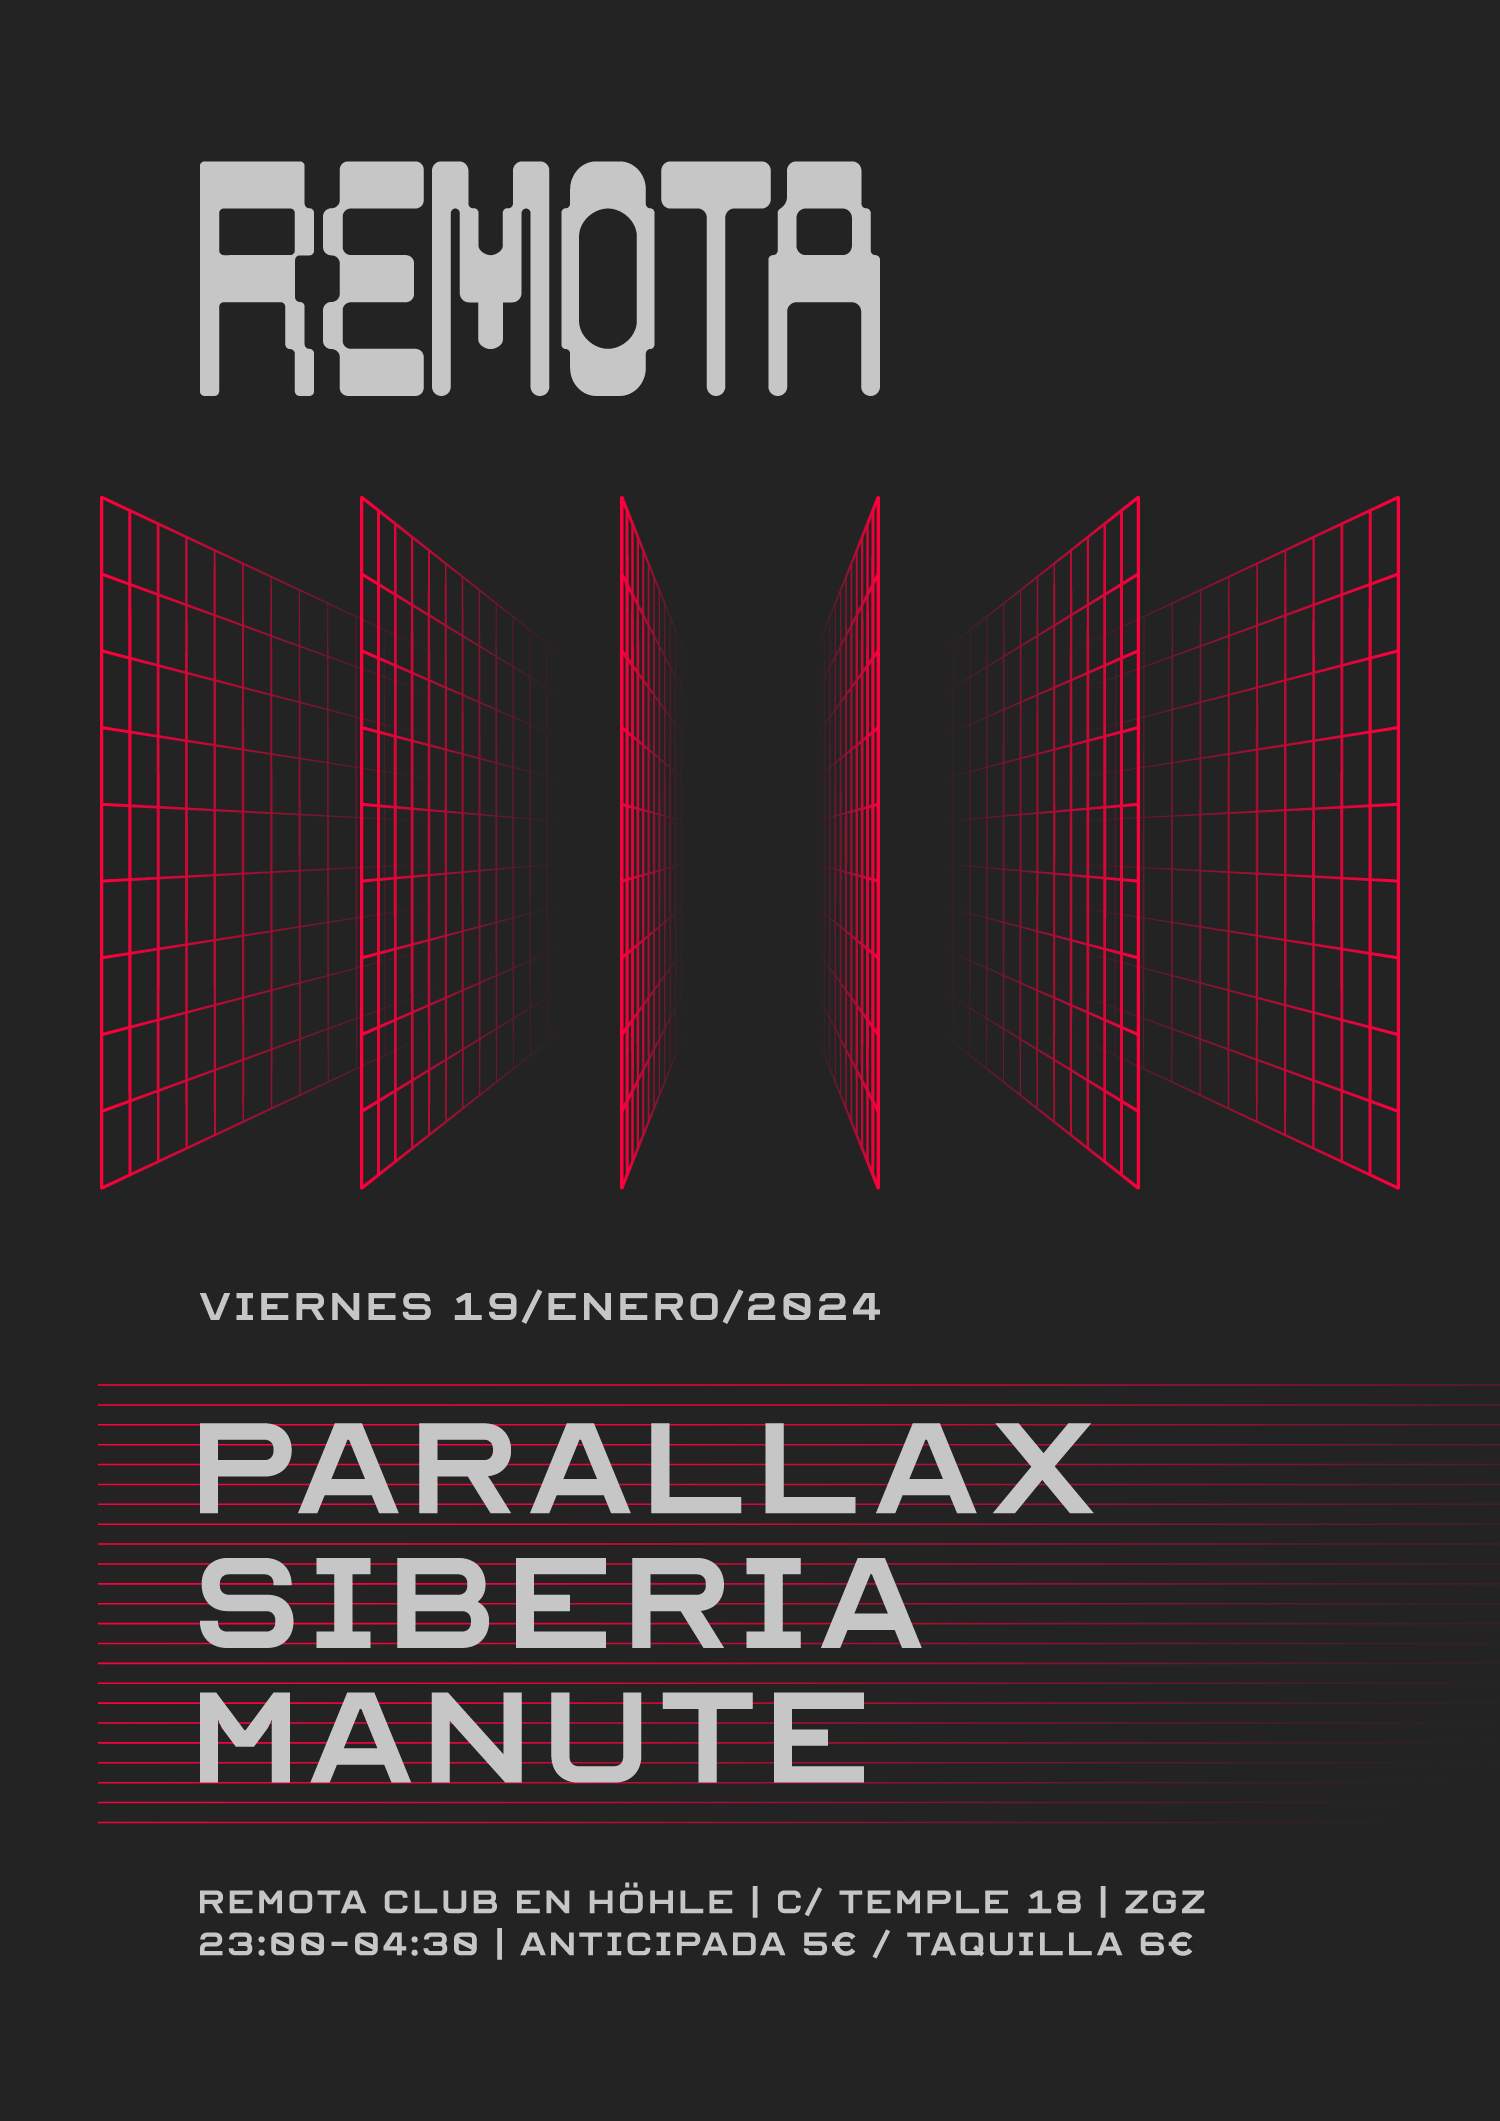 Remota Club / Parallax, Siberia, Manute - フライヤー表